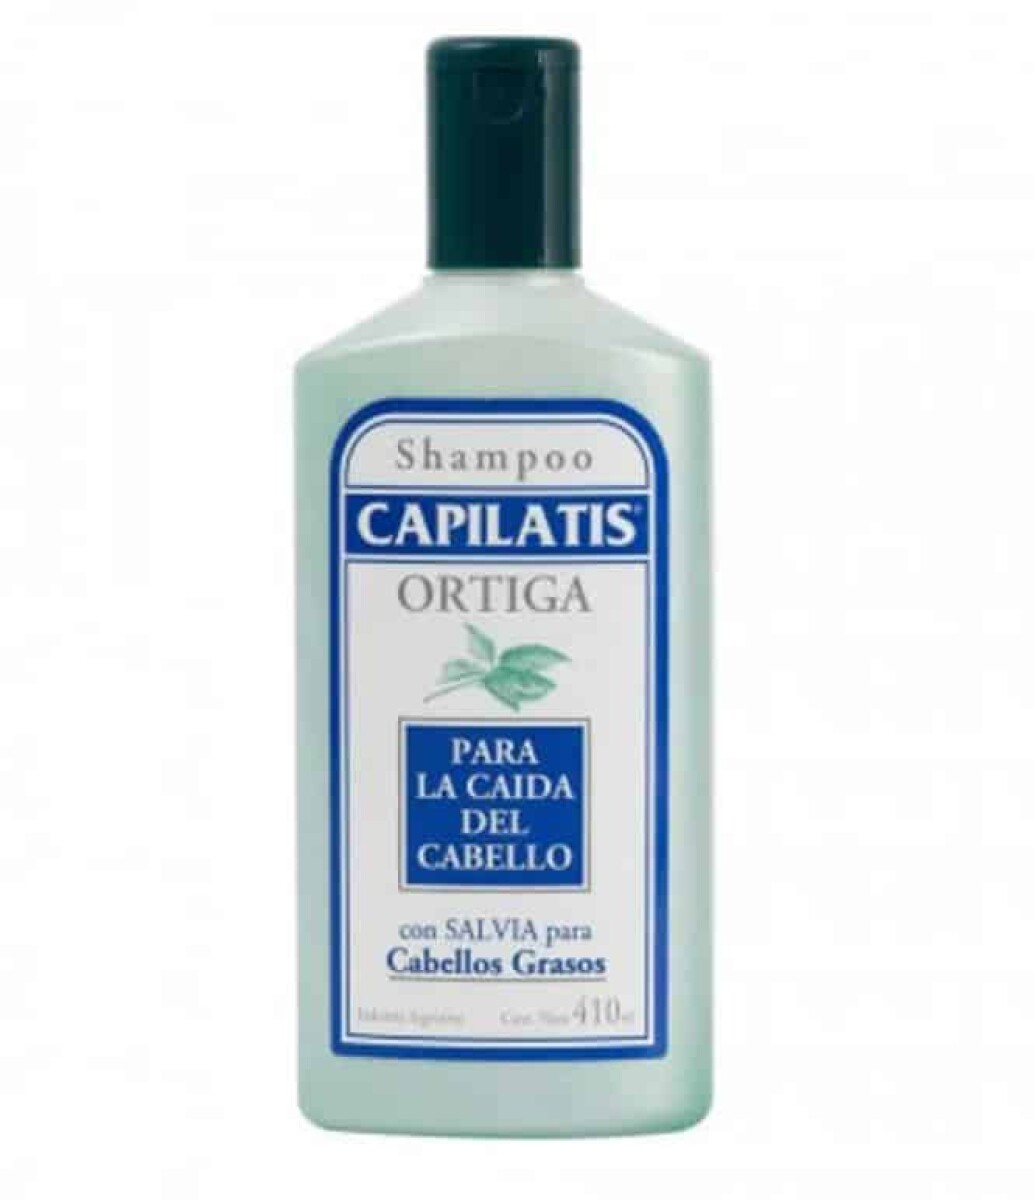 Shampoo Capilatis Ortiga Cabello Graso 410 ml 